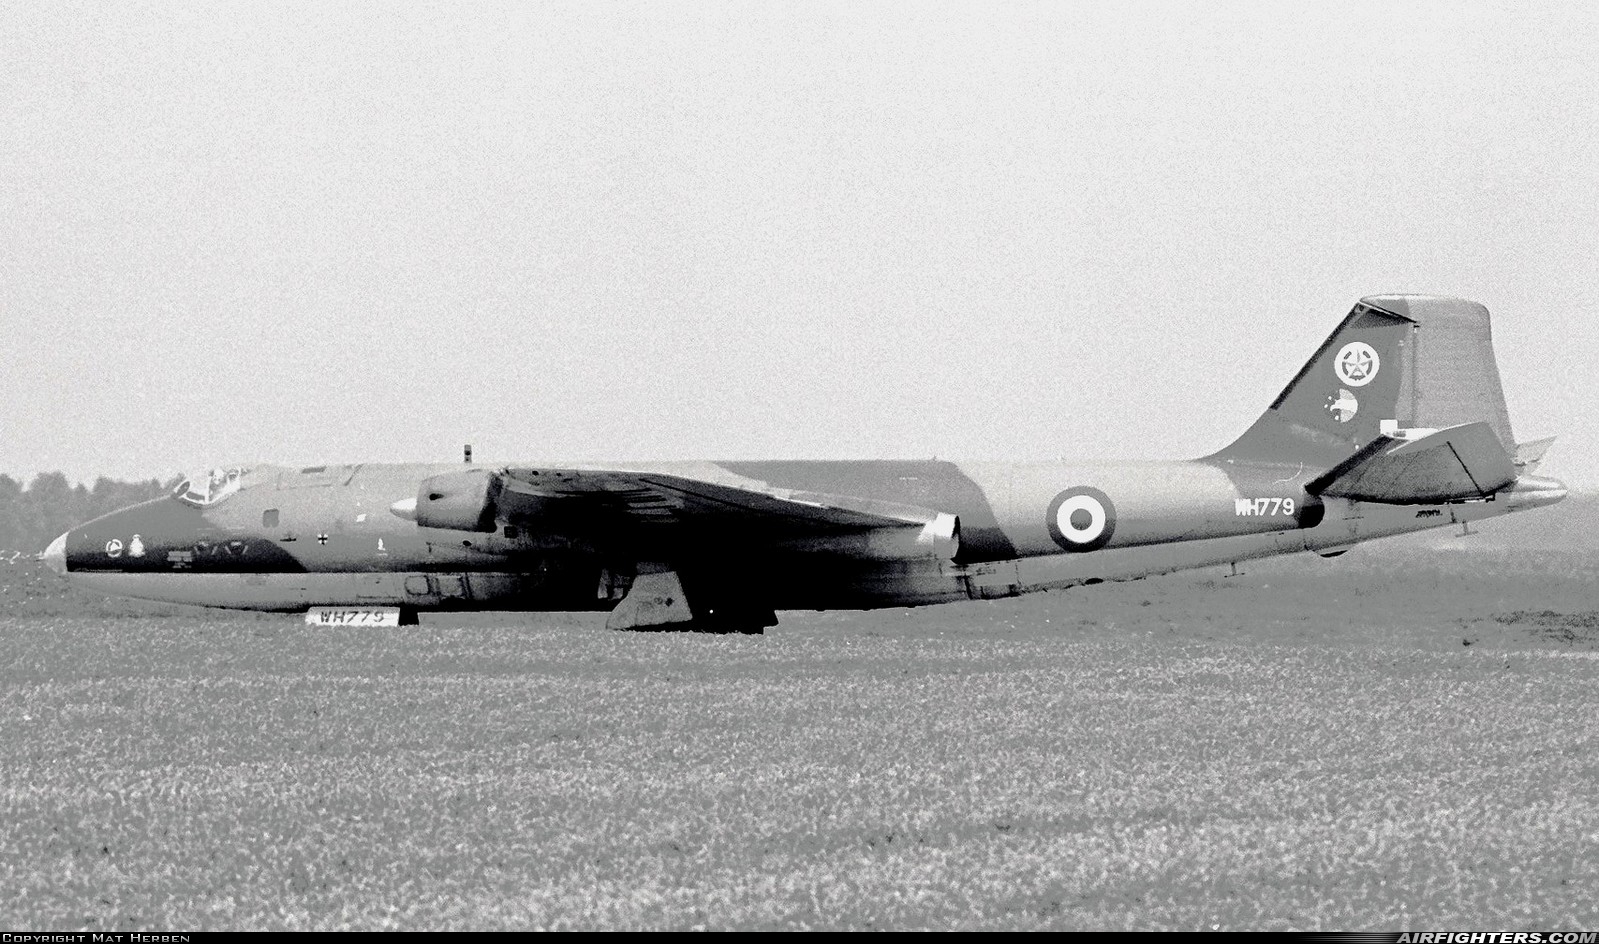 UK - Air Force English Electric Canberra PR7 WH779 at Arnhem - Deelen (EHDL), Netherlands